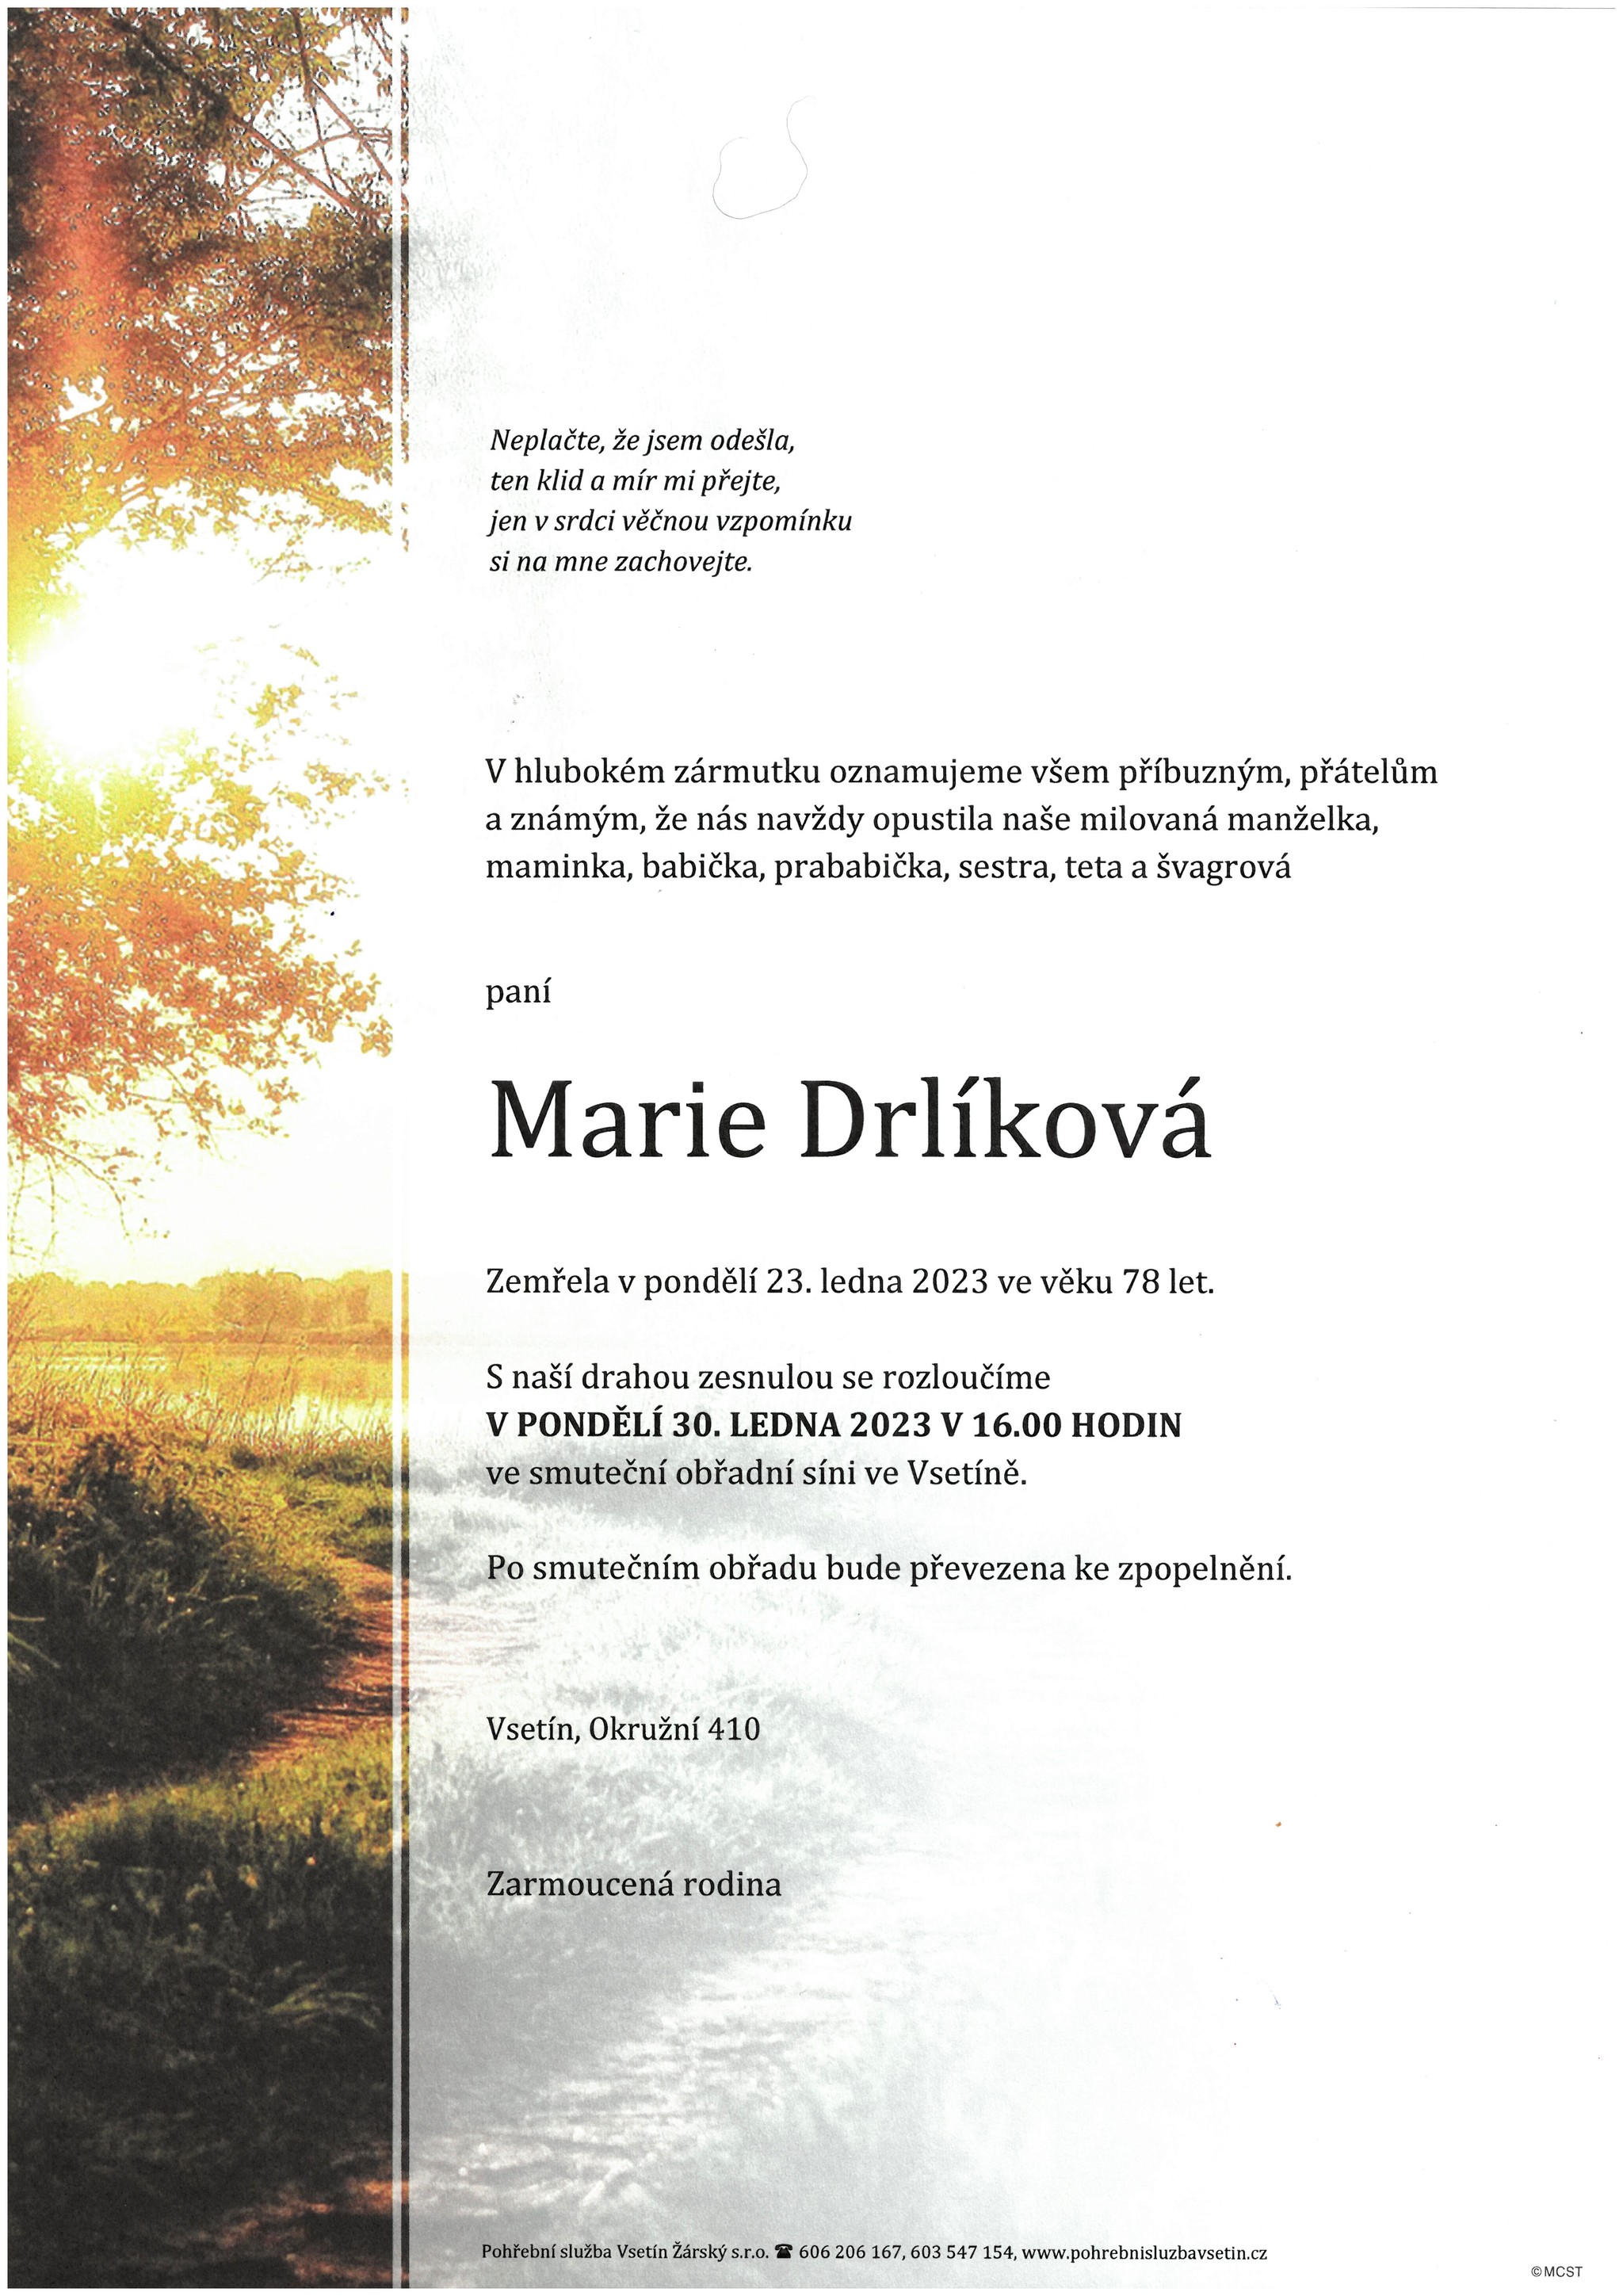 Marie Drlíková